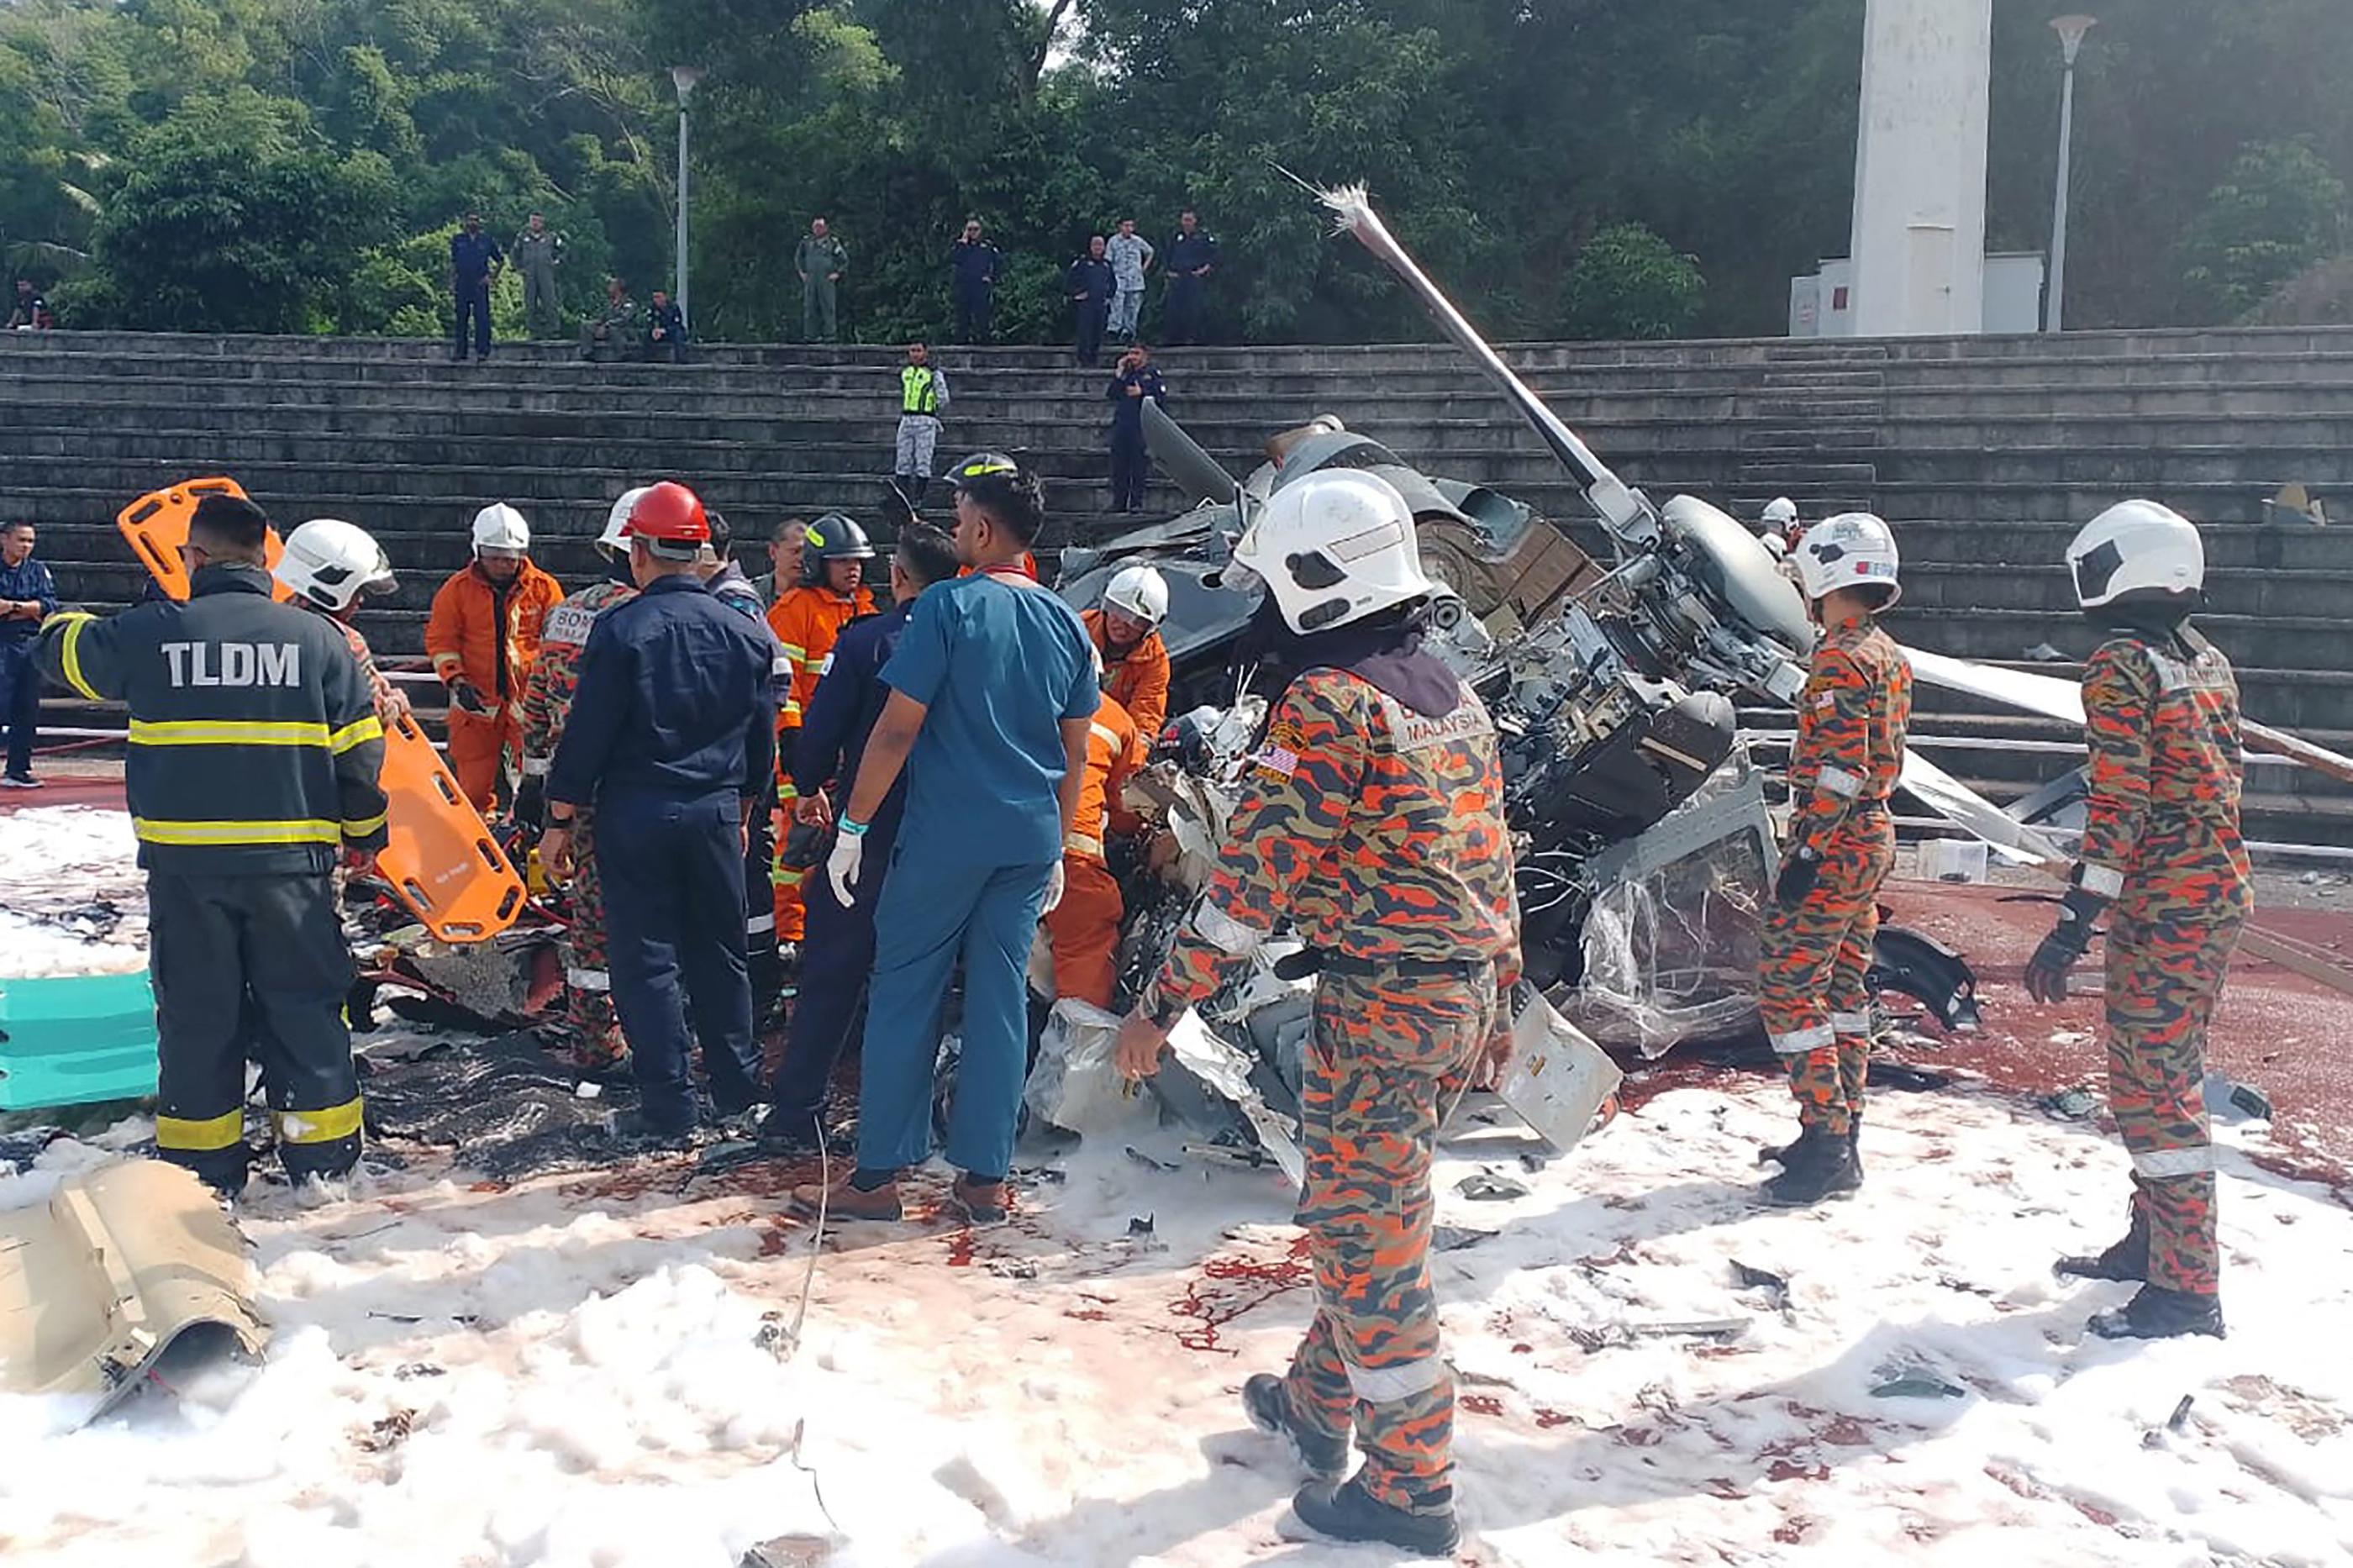 Les sauveteurs inspectant le site de l’écrasement après que deux hélicoptères militaires se sont heurtés à Lumut dans l’État malaisien de Perak. AFP/ Perak’s Fire and Rescue Department